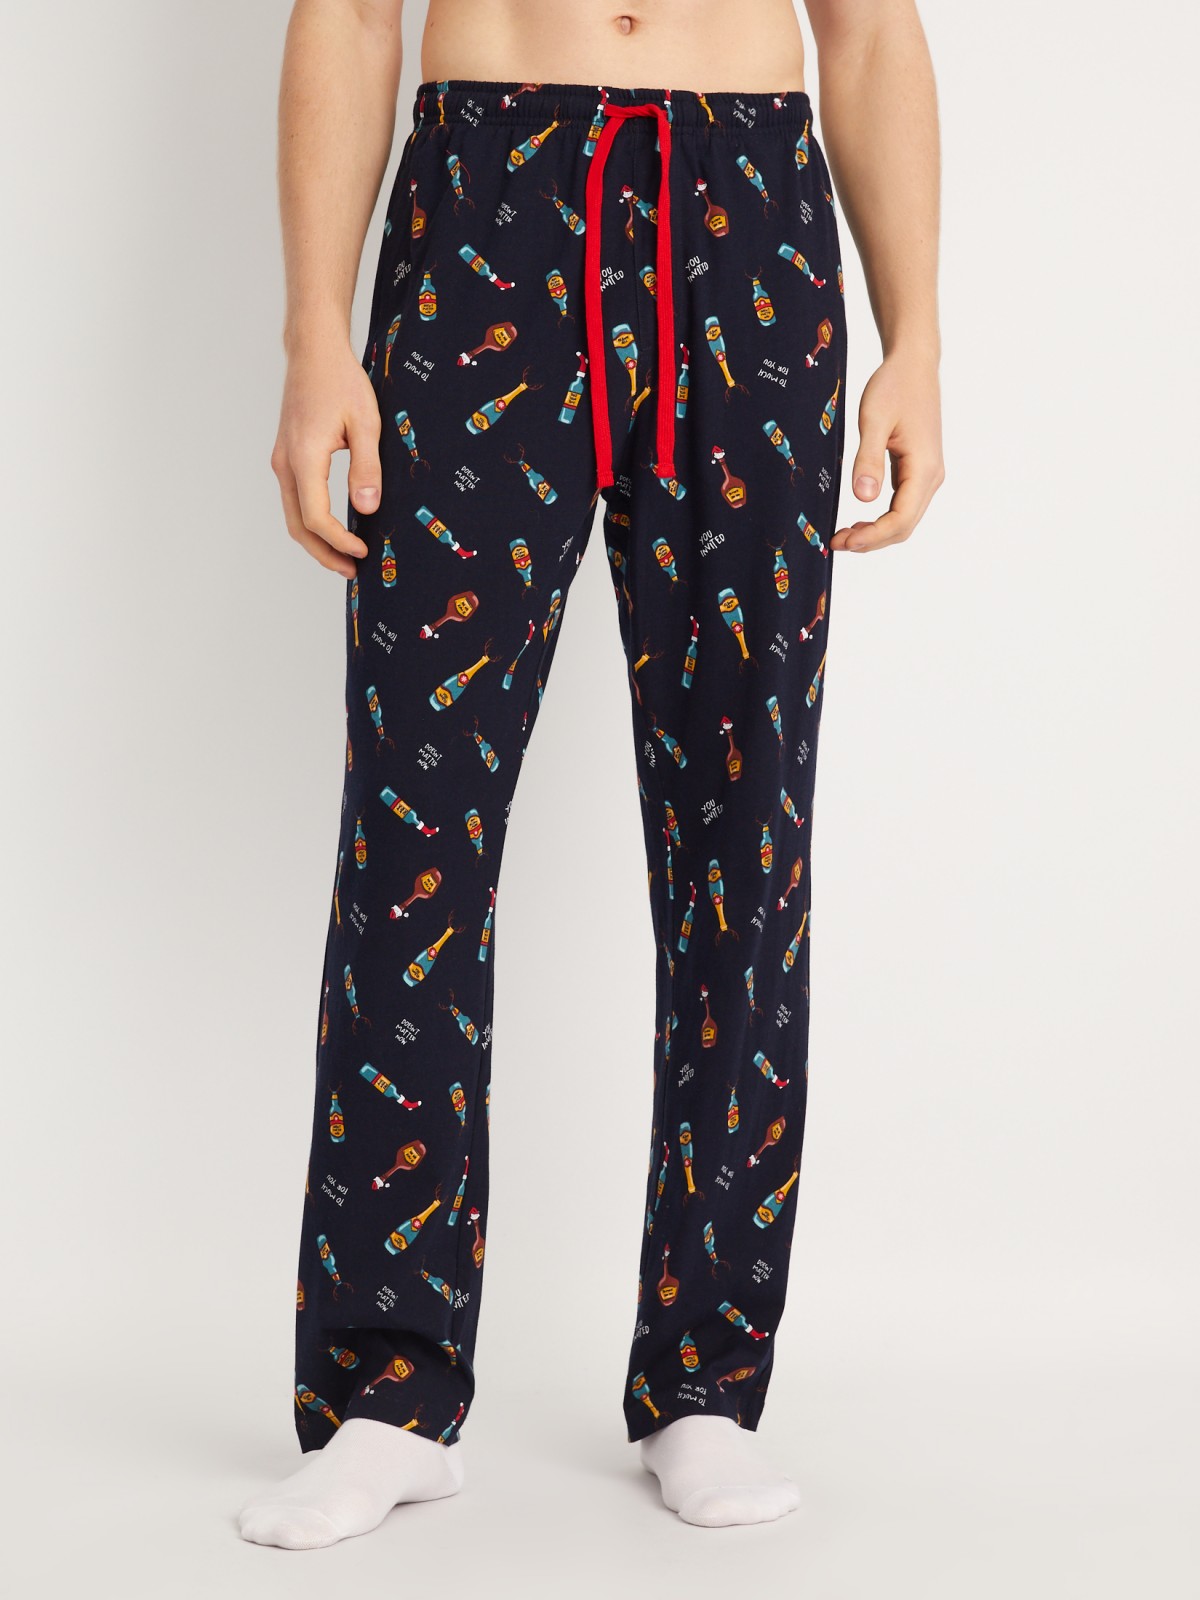 Домашний пижамный комплект новогодний (футболка и штаны) zolla 613458759051, цвет красный, размер S - фото 4